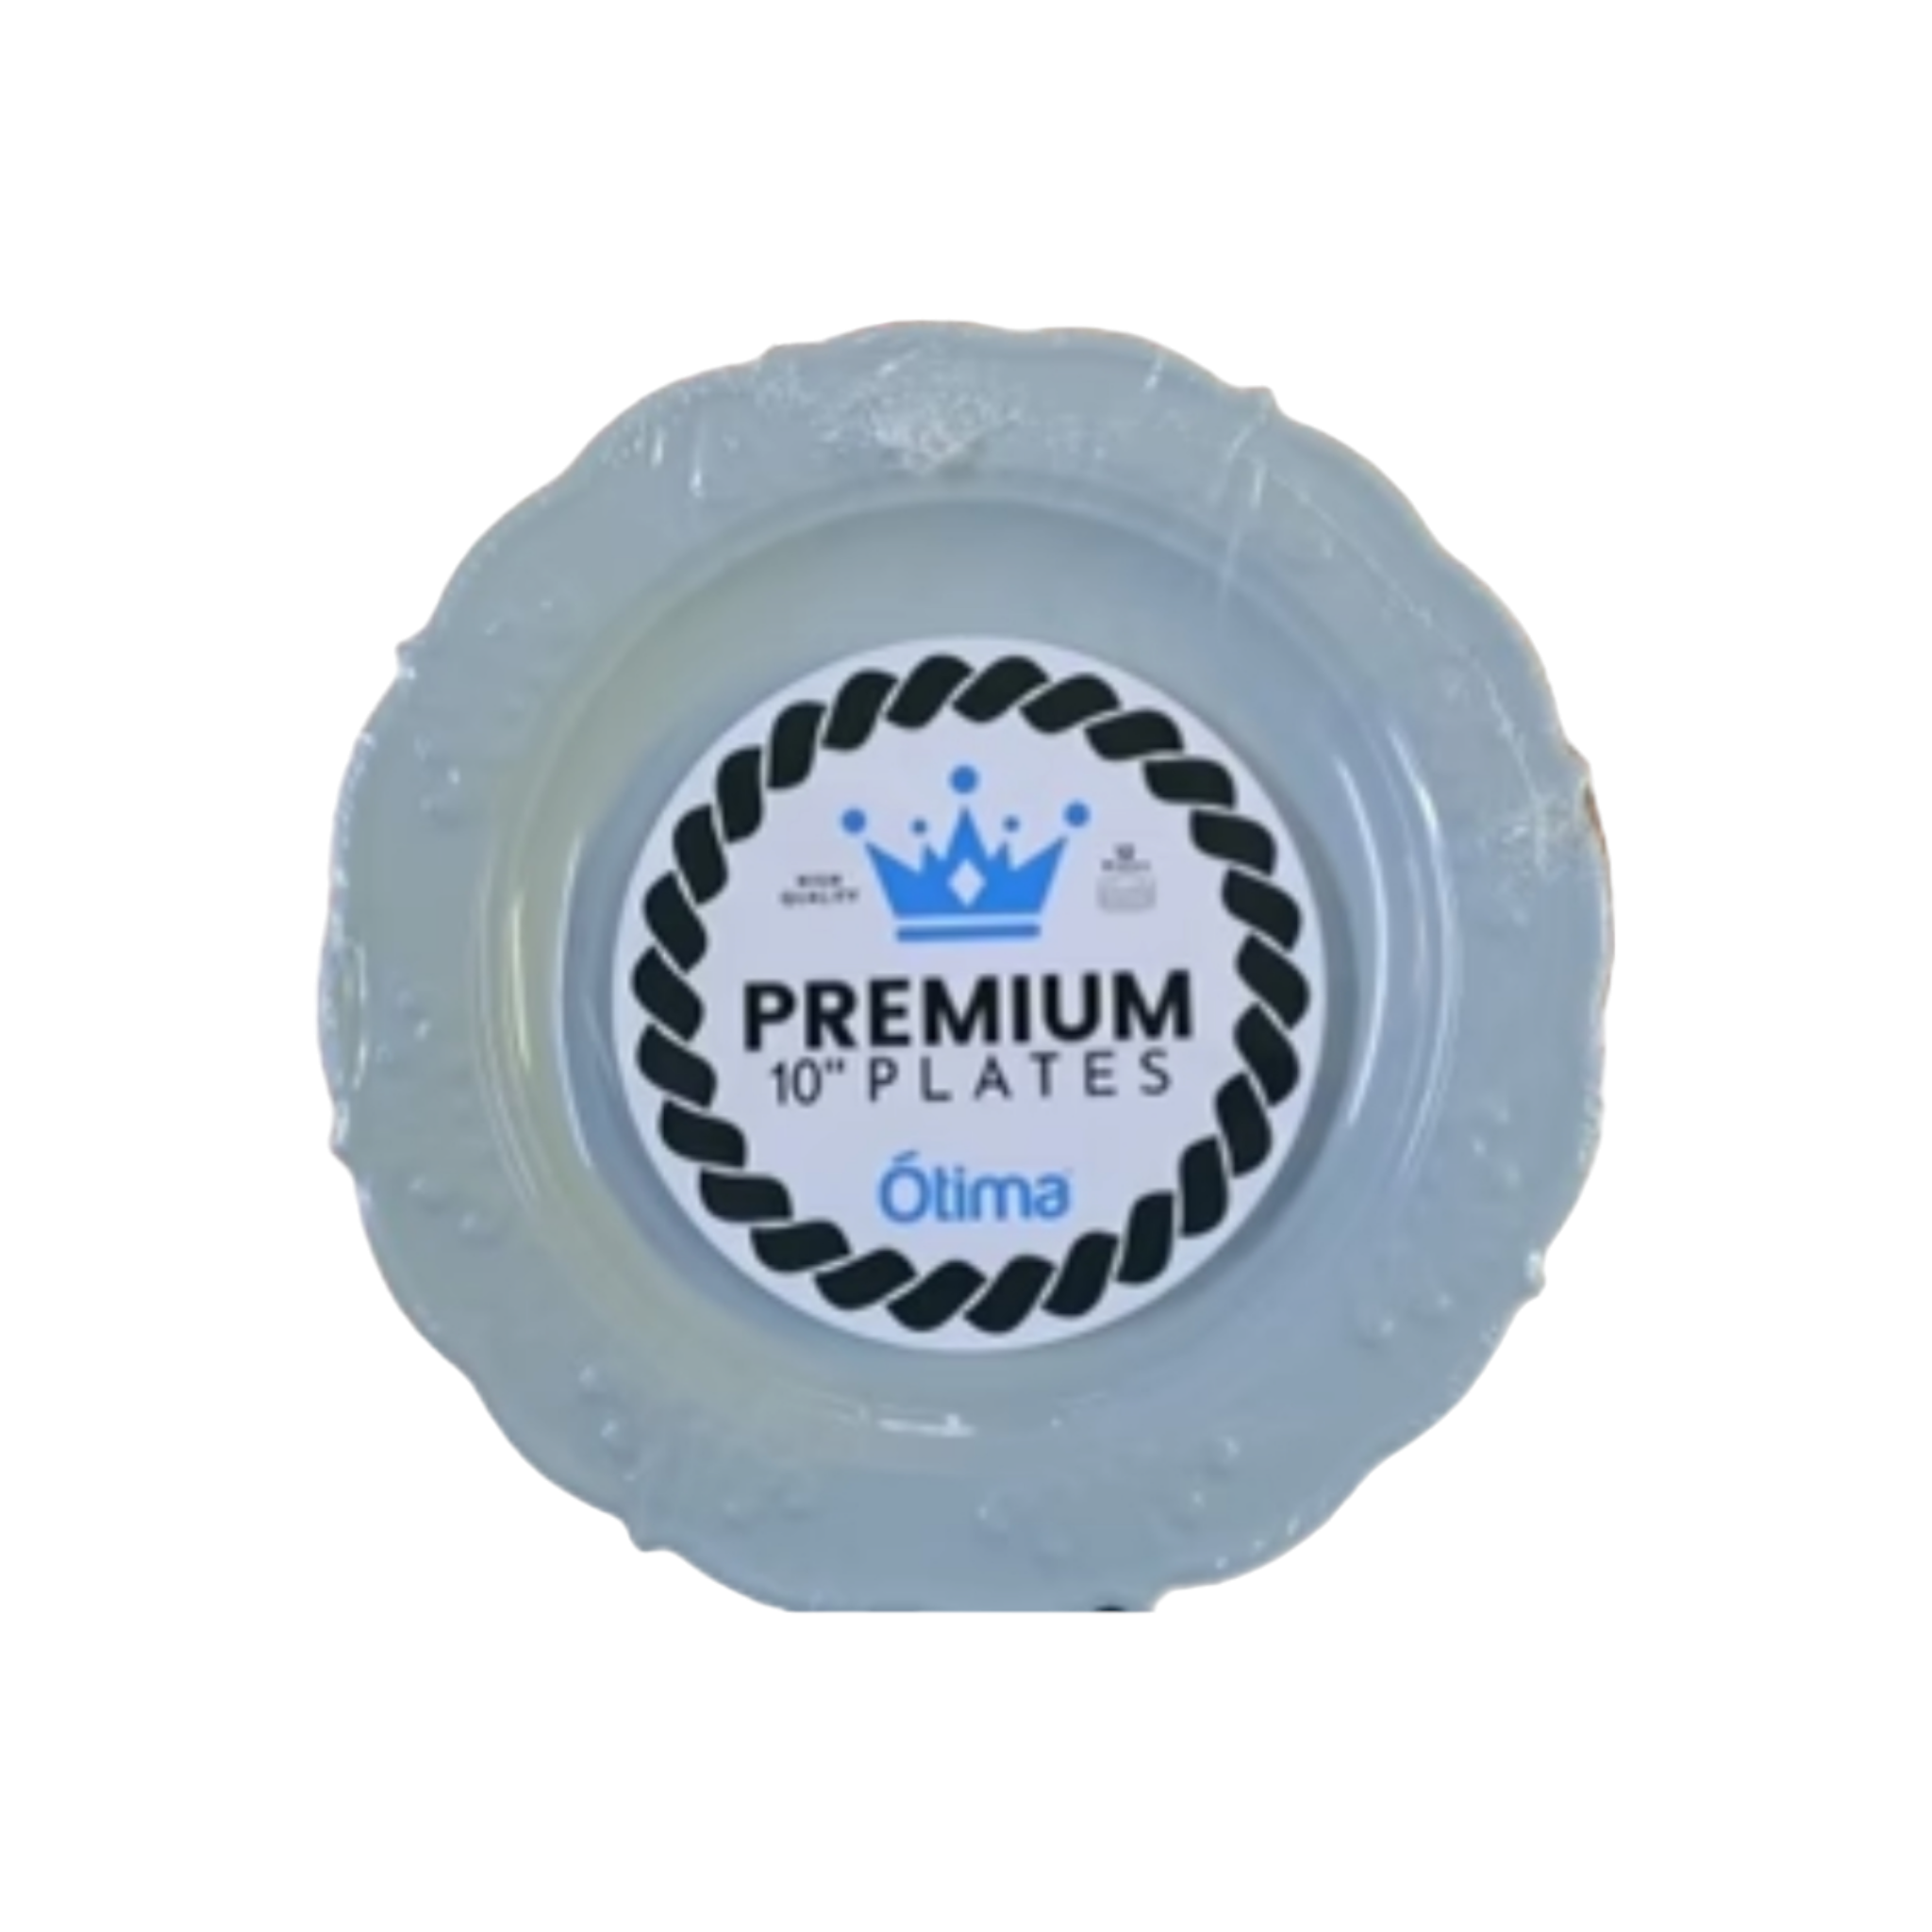 Otima Premium Party Plate 24.5cm Reusable Plastic 12pcs